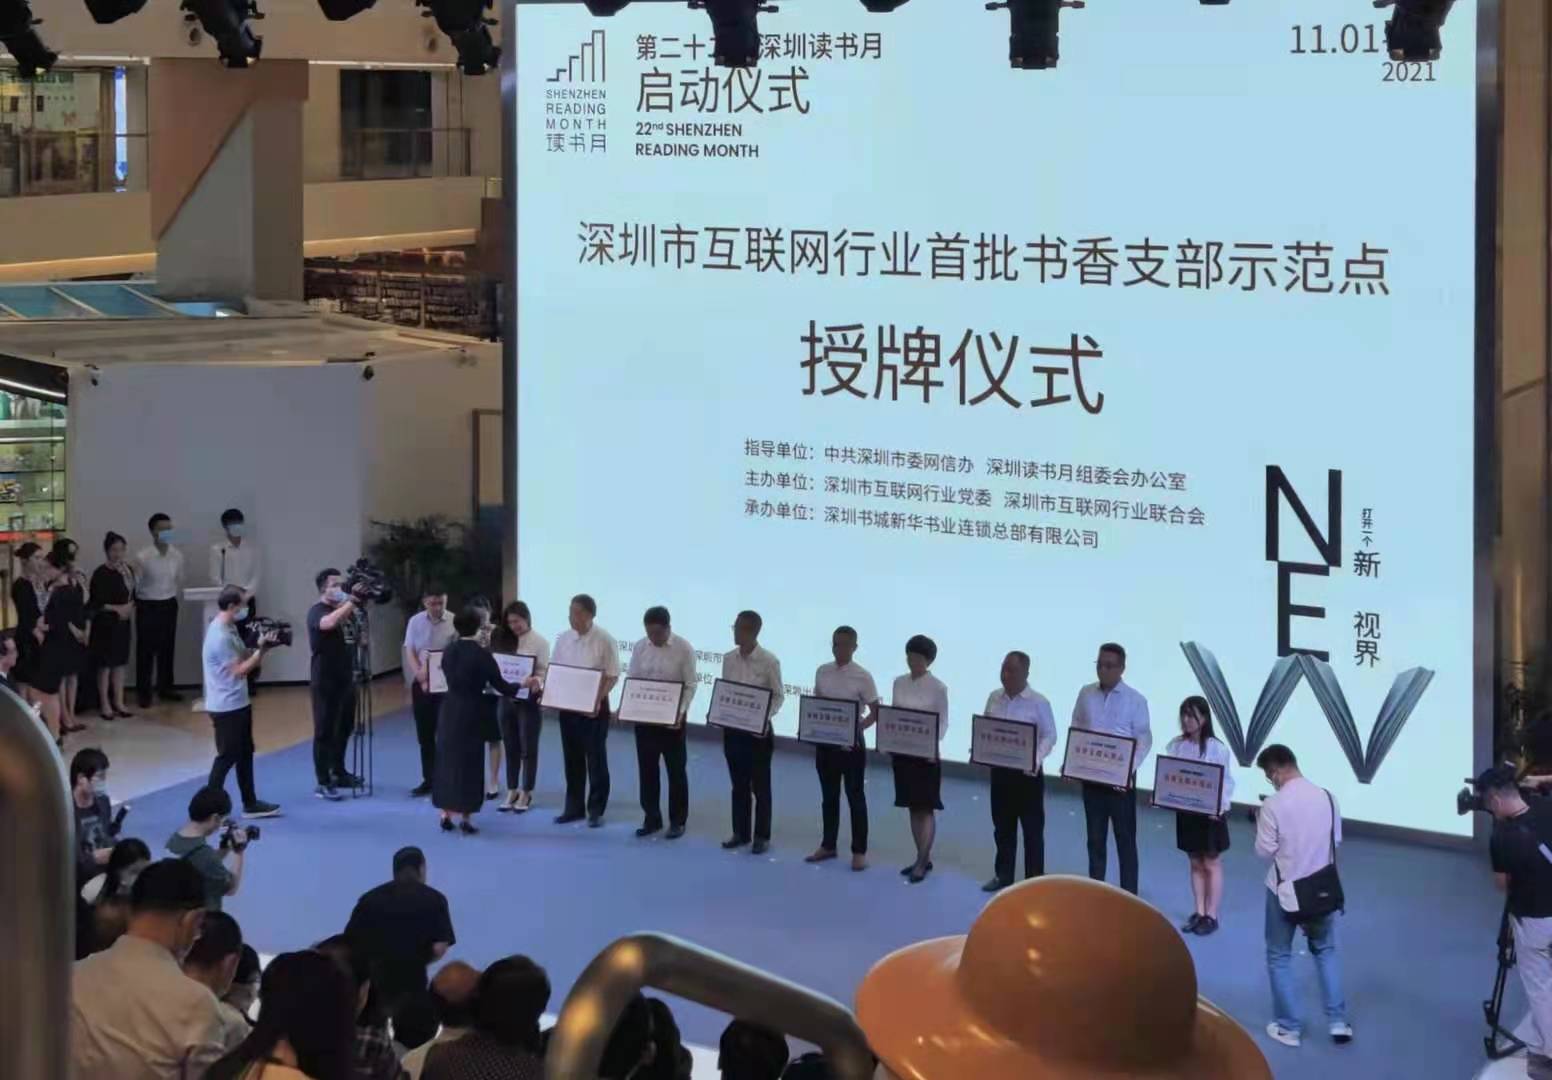 深圳市九晟光电助力深圳读书月圆满成功！